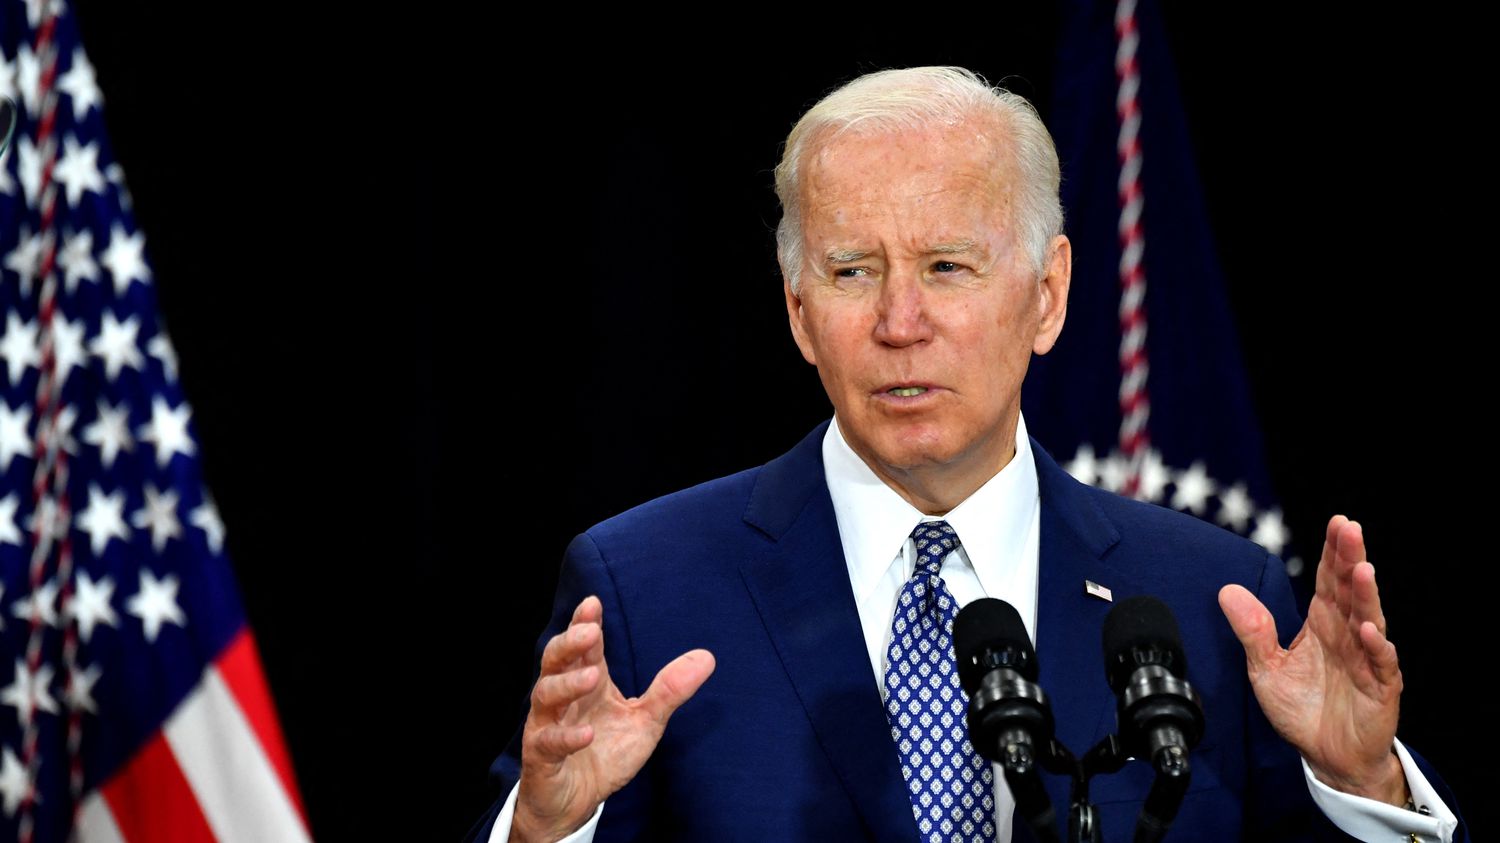 Racist killing in Buffalo: Joe Biden denounces the 